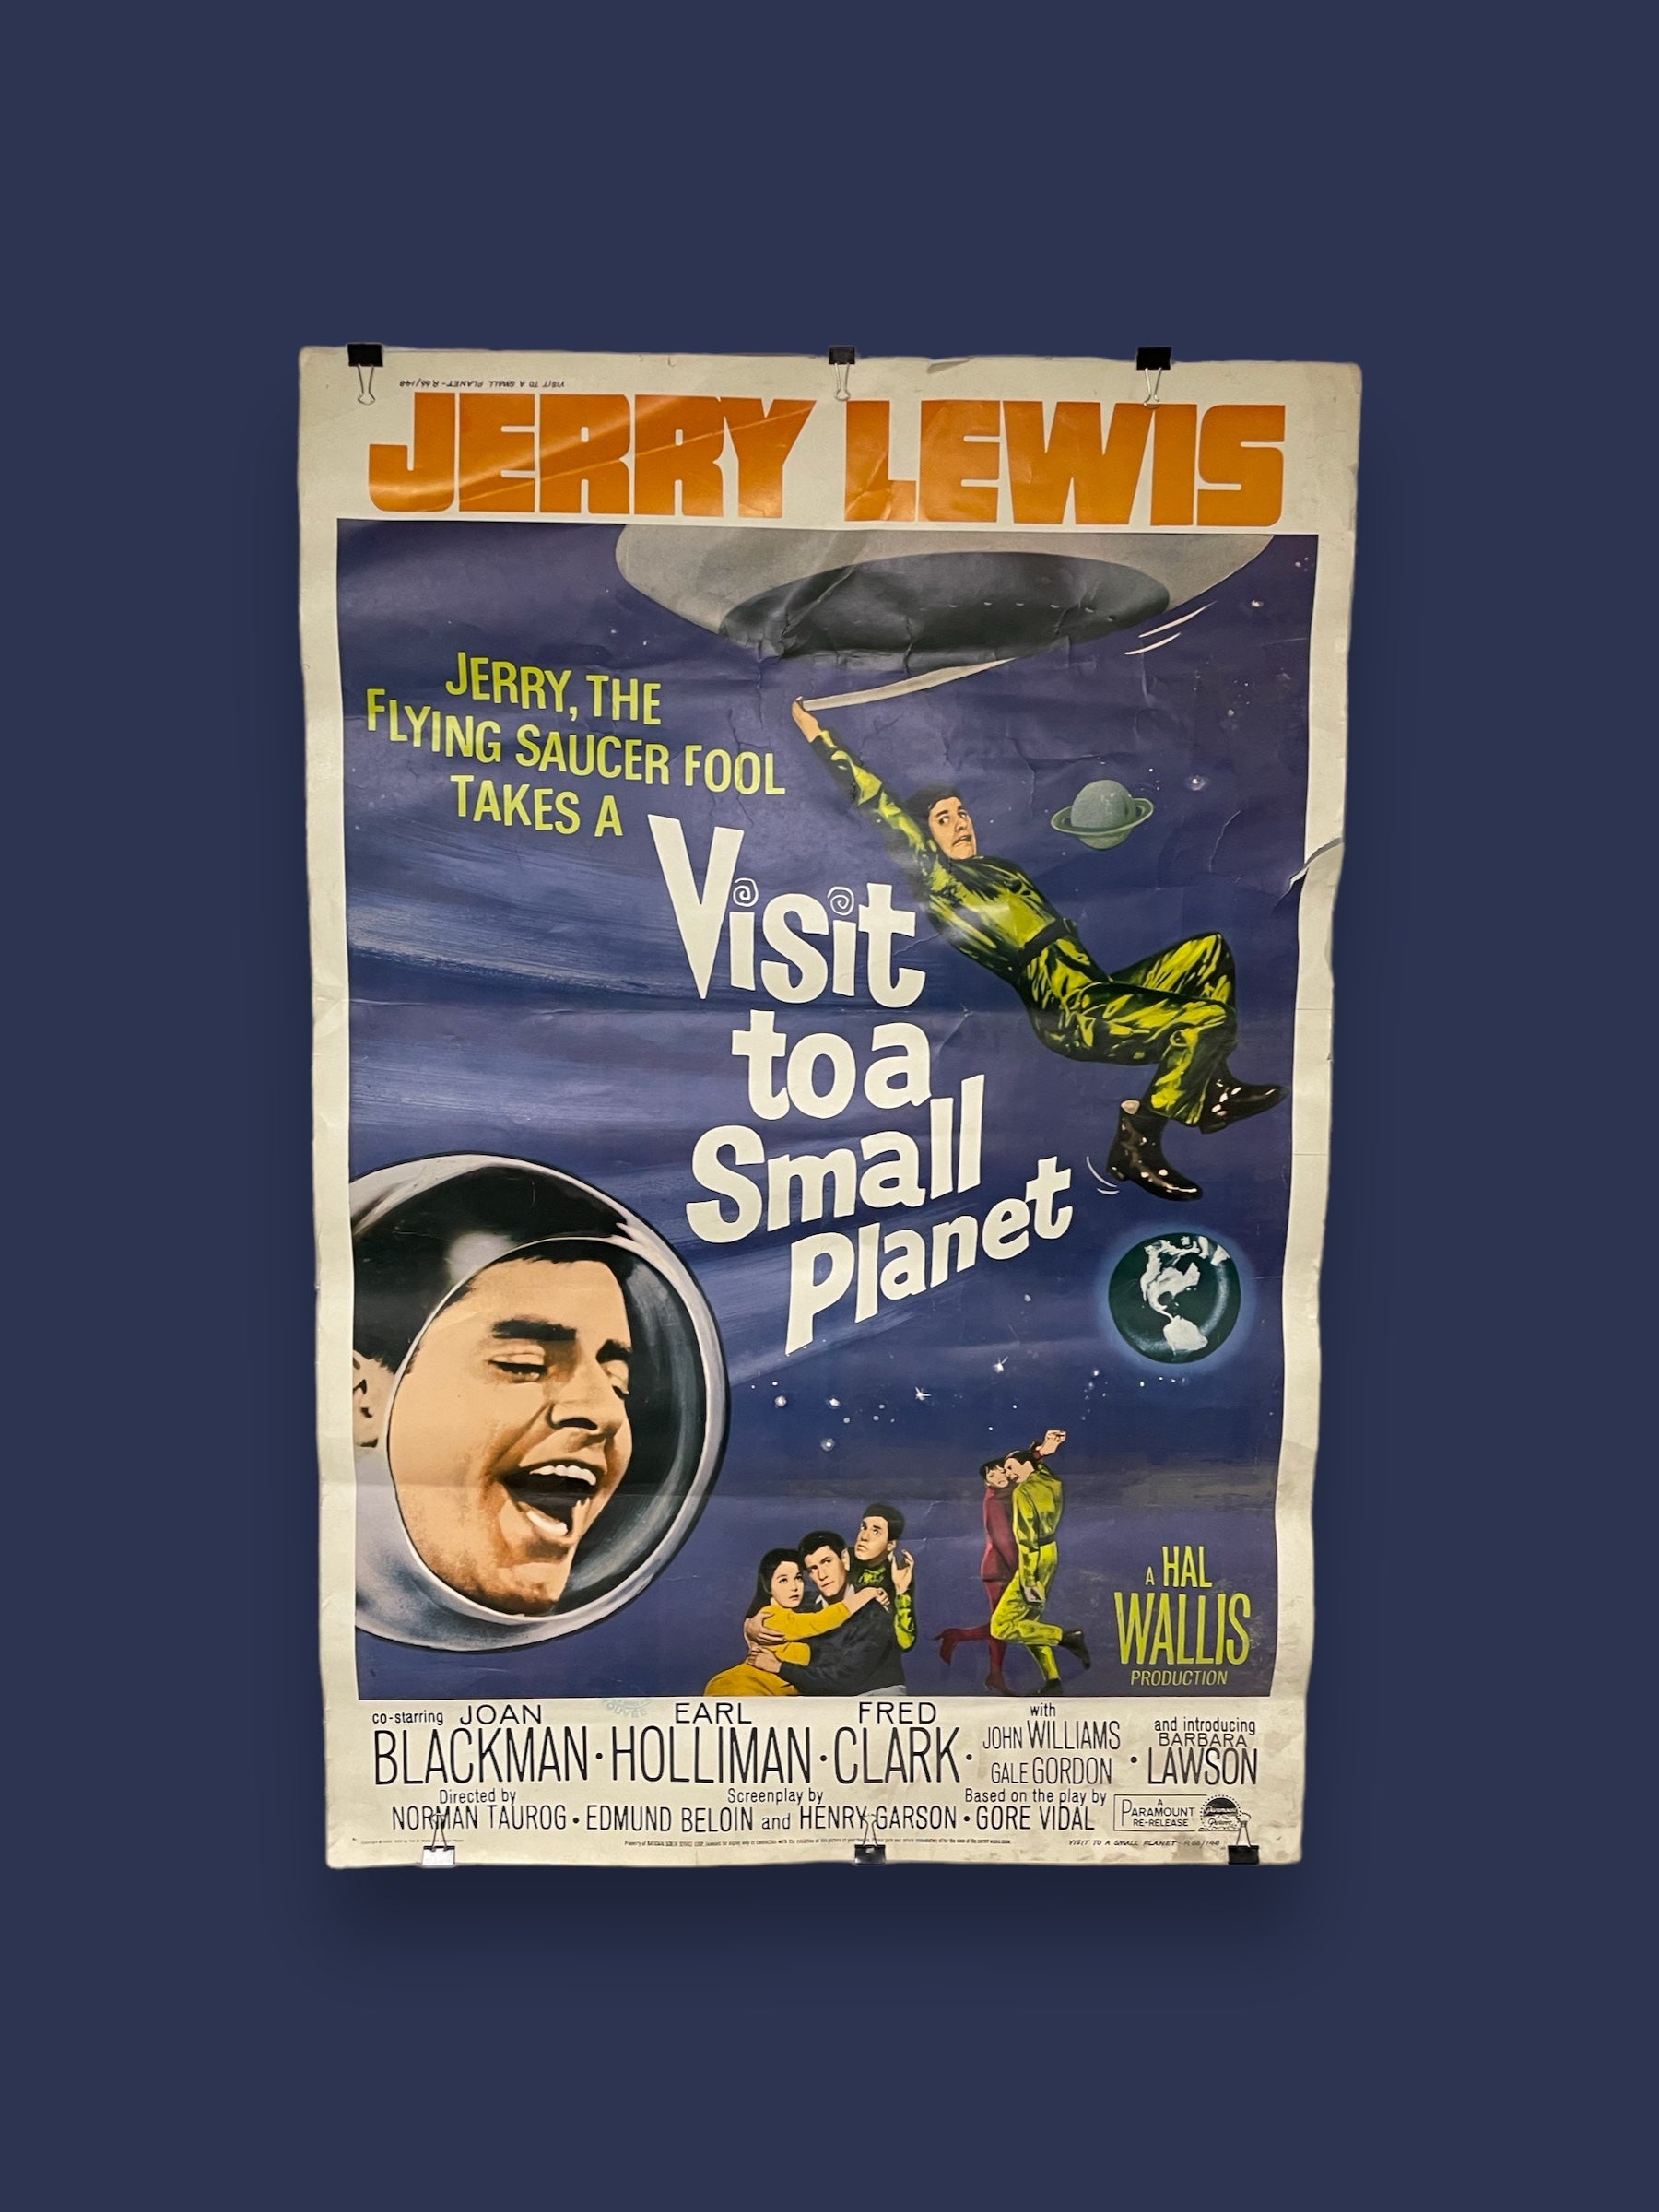 Affiche de cinéma vintage "Visit to a Small Planet" mettant en vedette Jerry Lewis